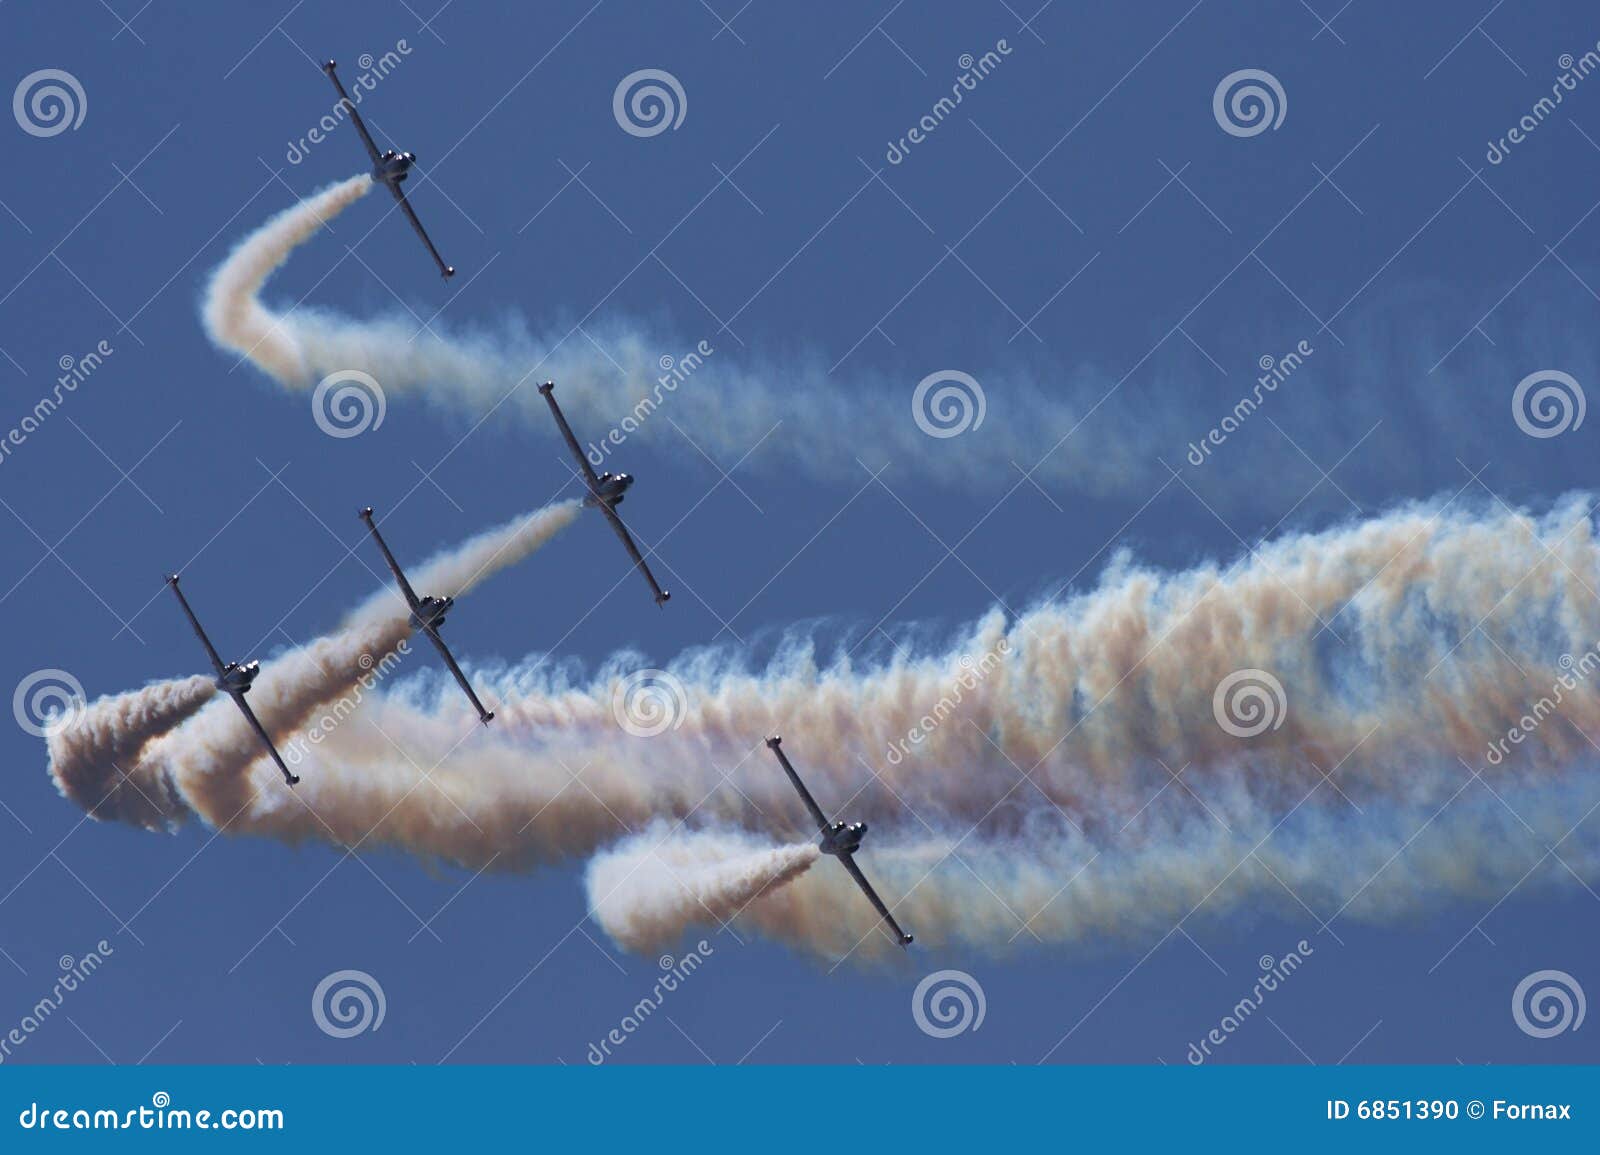 aerobatic jet planes